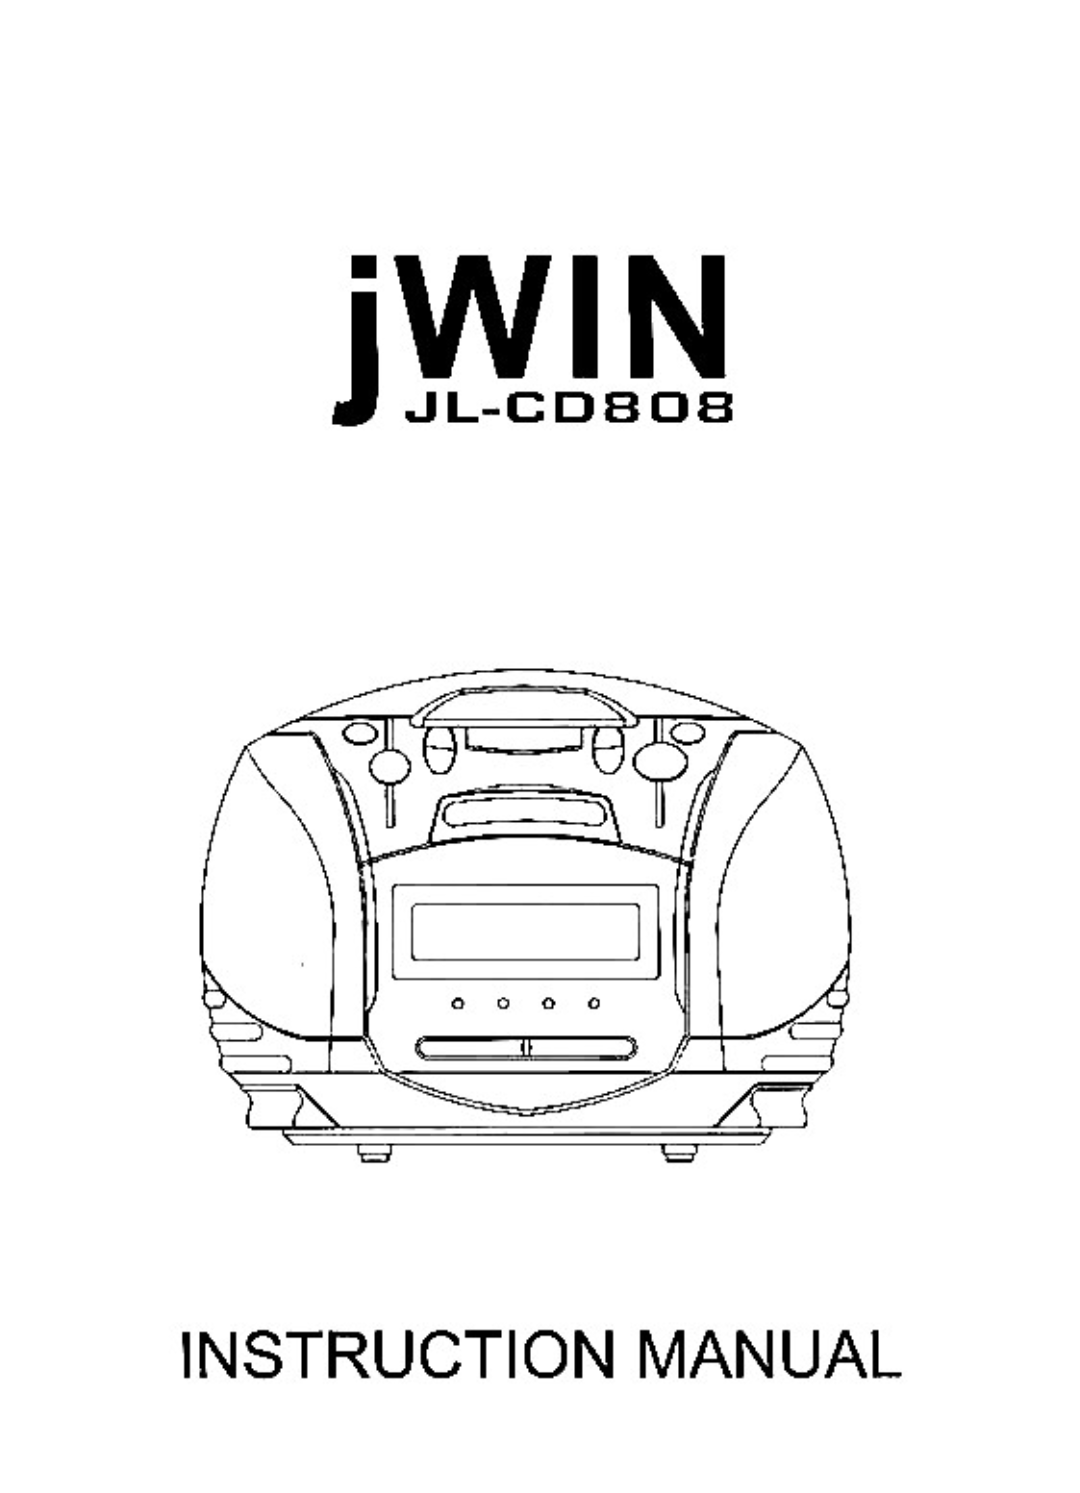 Jwin JL-CD808 manual 